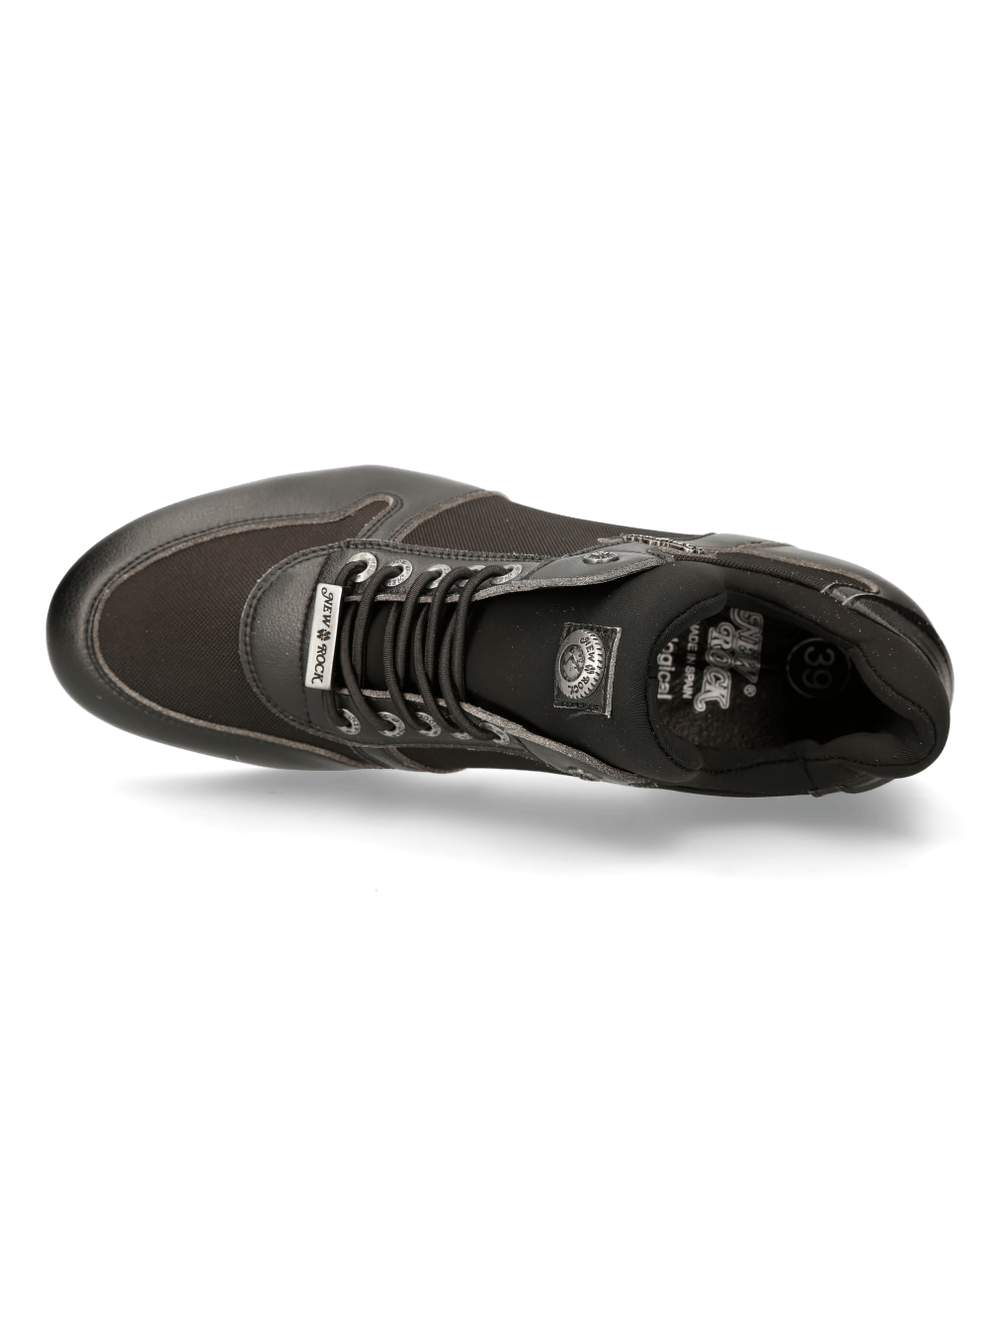 NEW ROCK Zapatillas deportivas híbridas urbanas negras con cordones